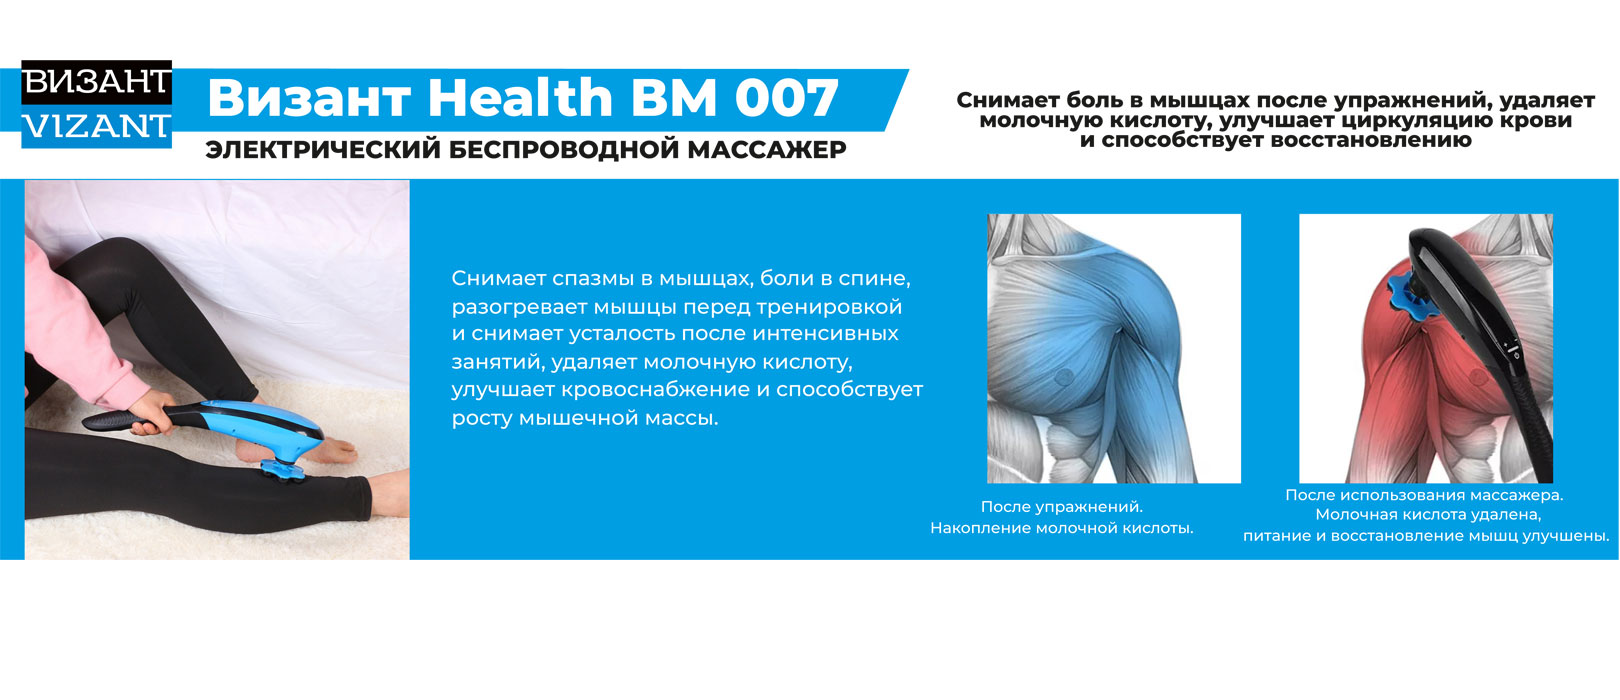 Массажер для тела Vizant HEALTH BM 007 электрический беспроводной